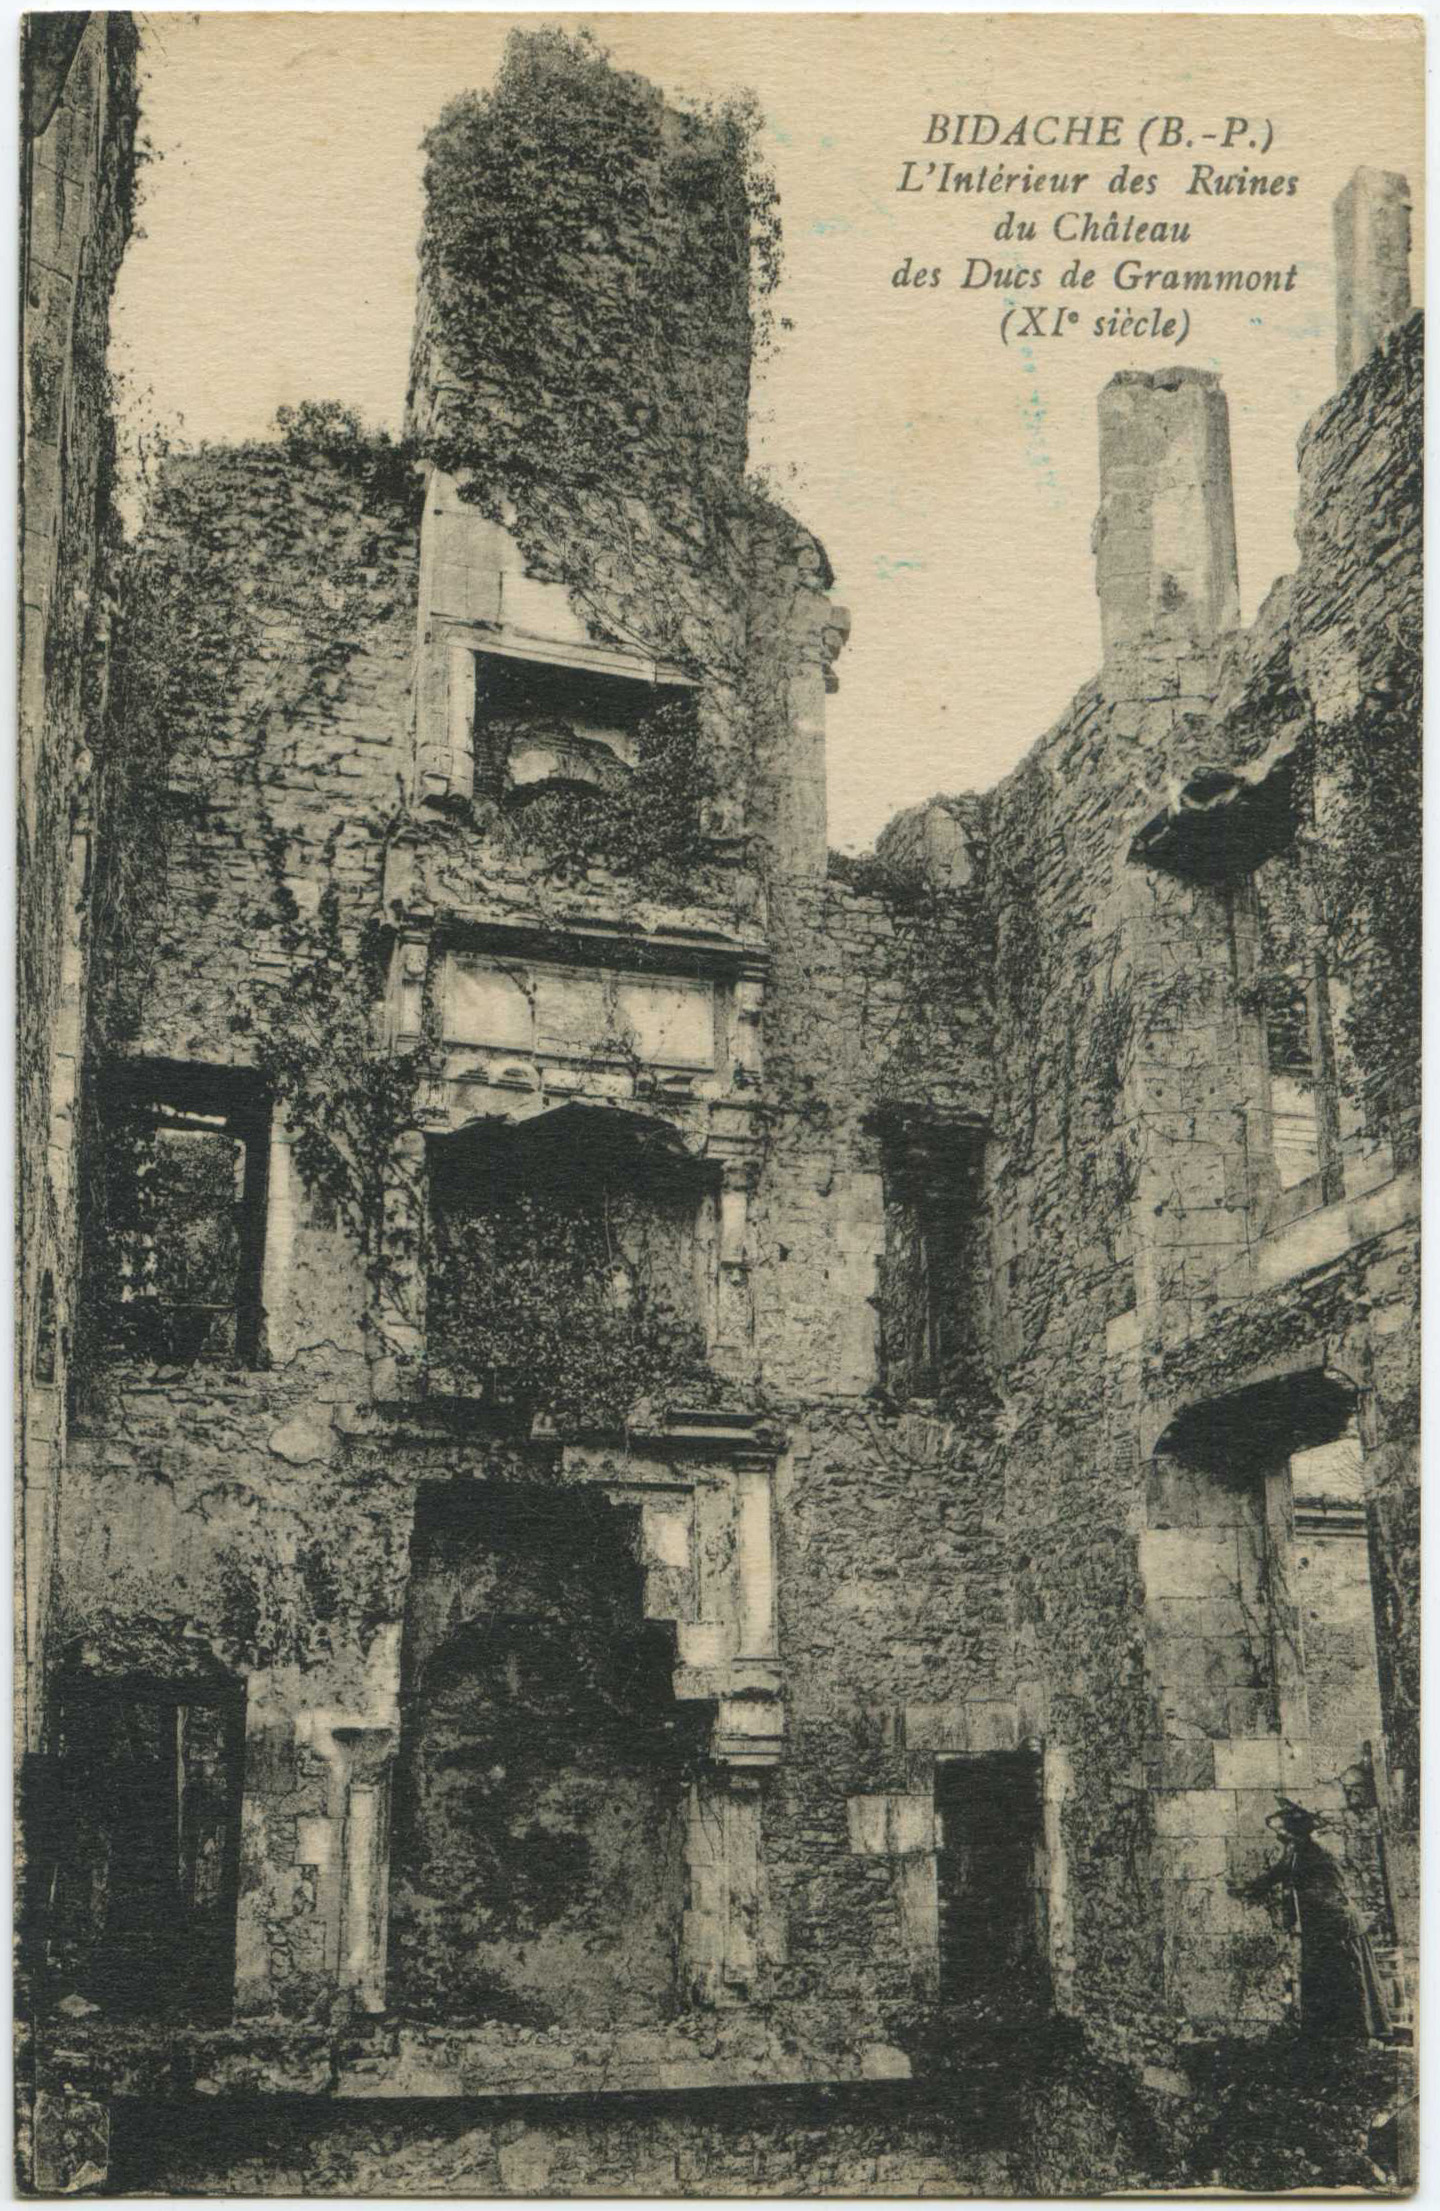 Bidache - L'Intérieur des Ruines du Château des Ducs de Grammont (XI<sup>e</sup> siècle)